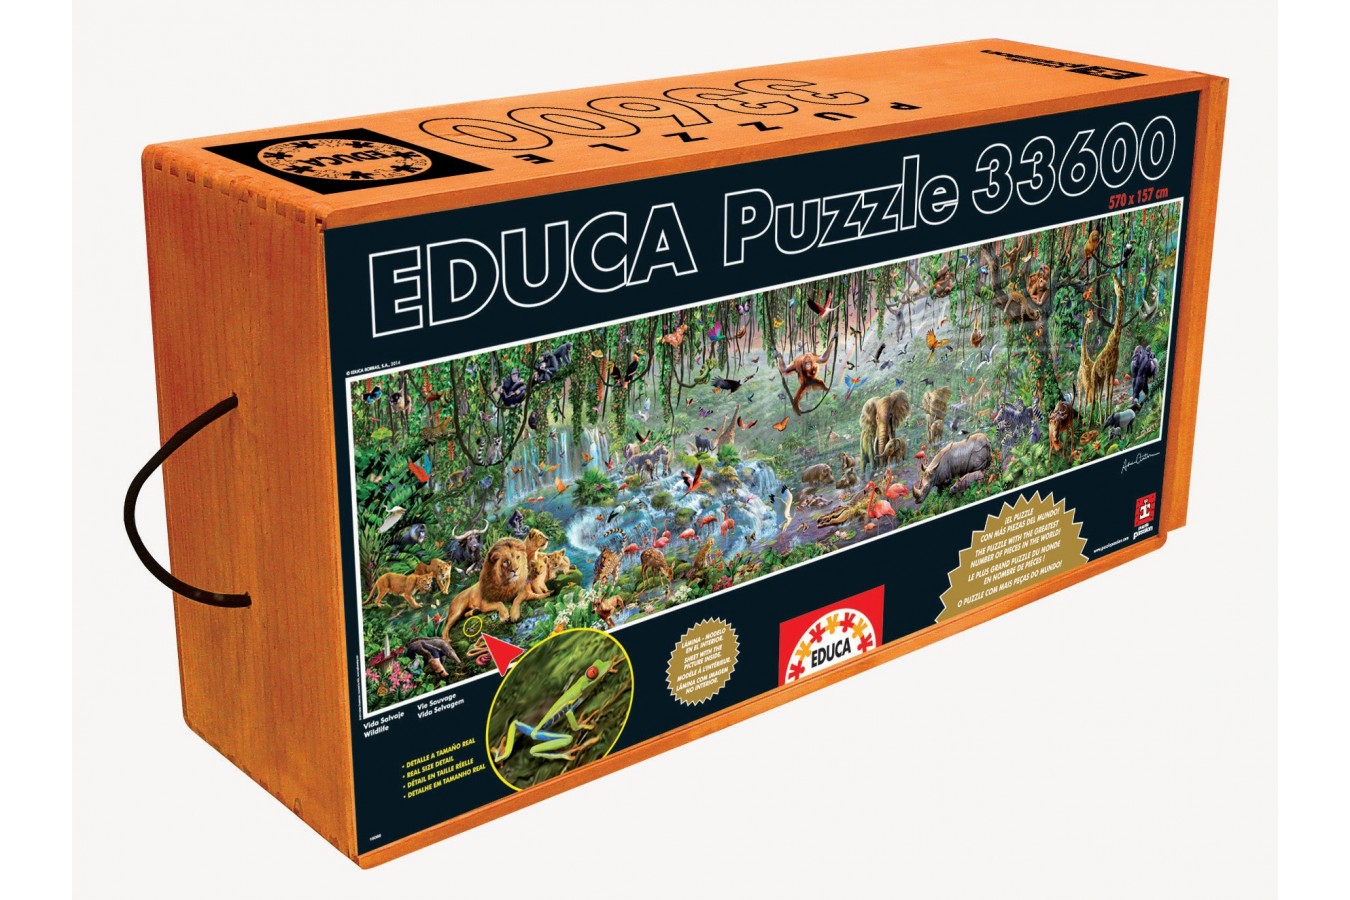 Puzzle Educa - Wild Life, 33600 piese (16066)